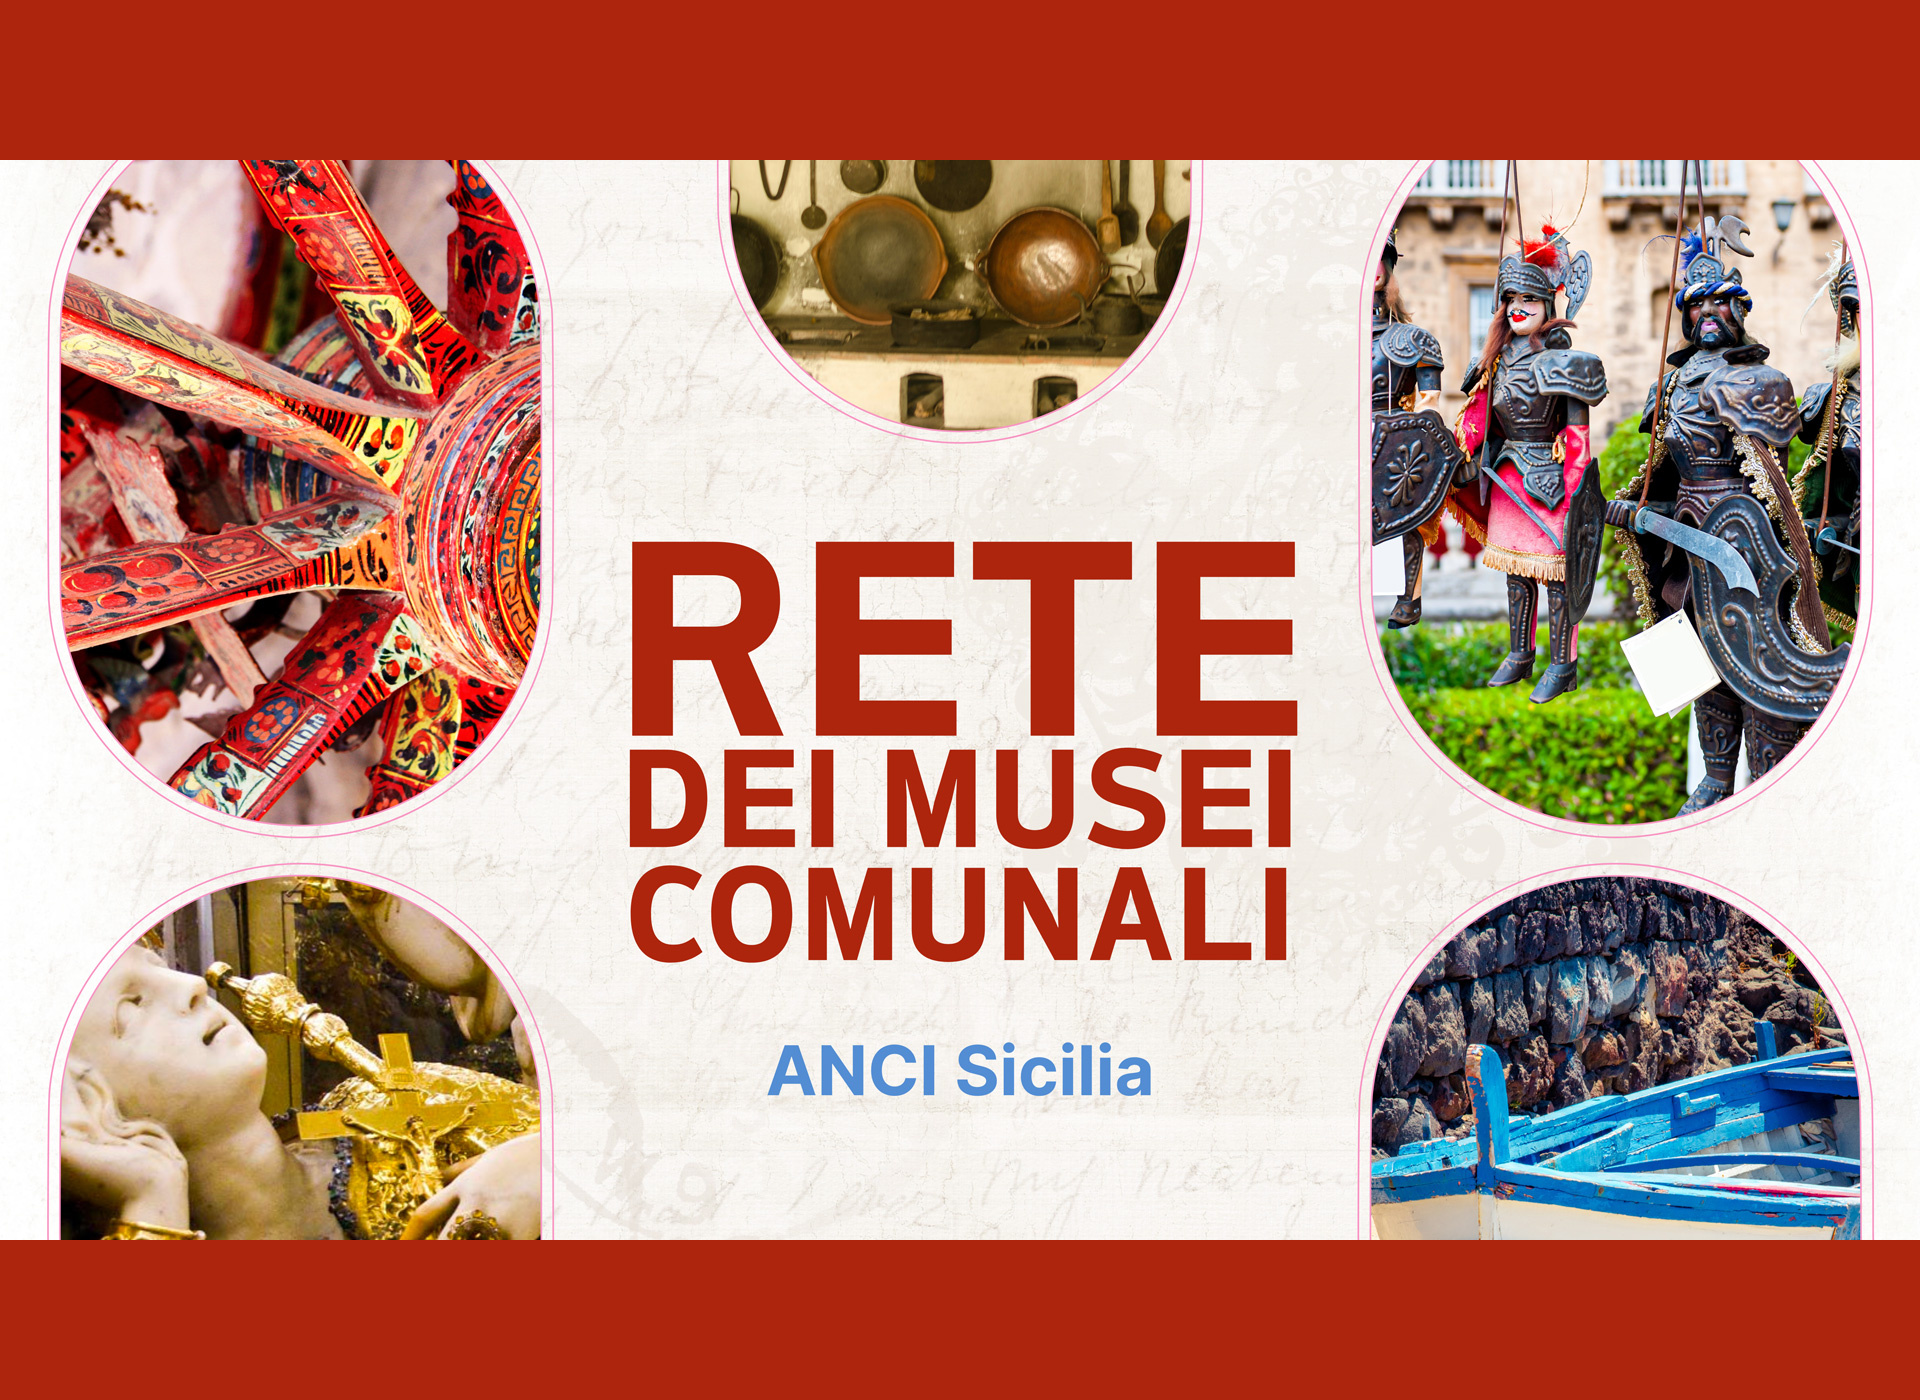 Conoscevate la Rete dei Musei comunali di Sicilia?